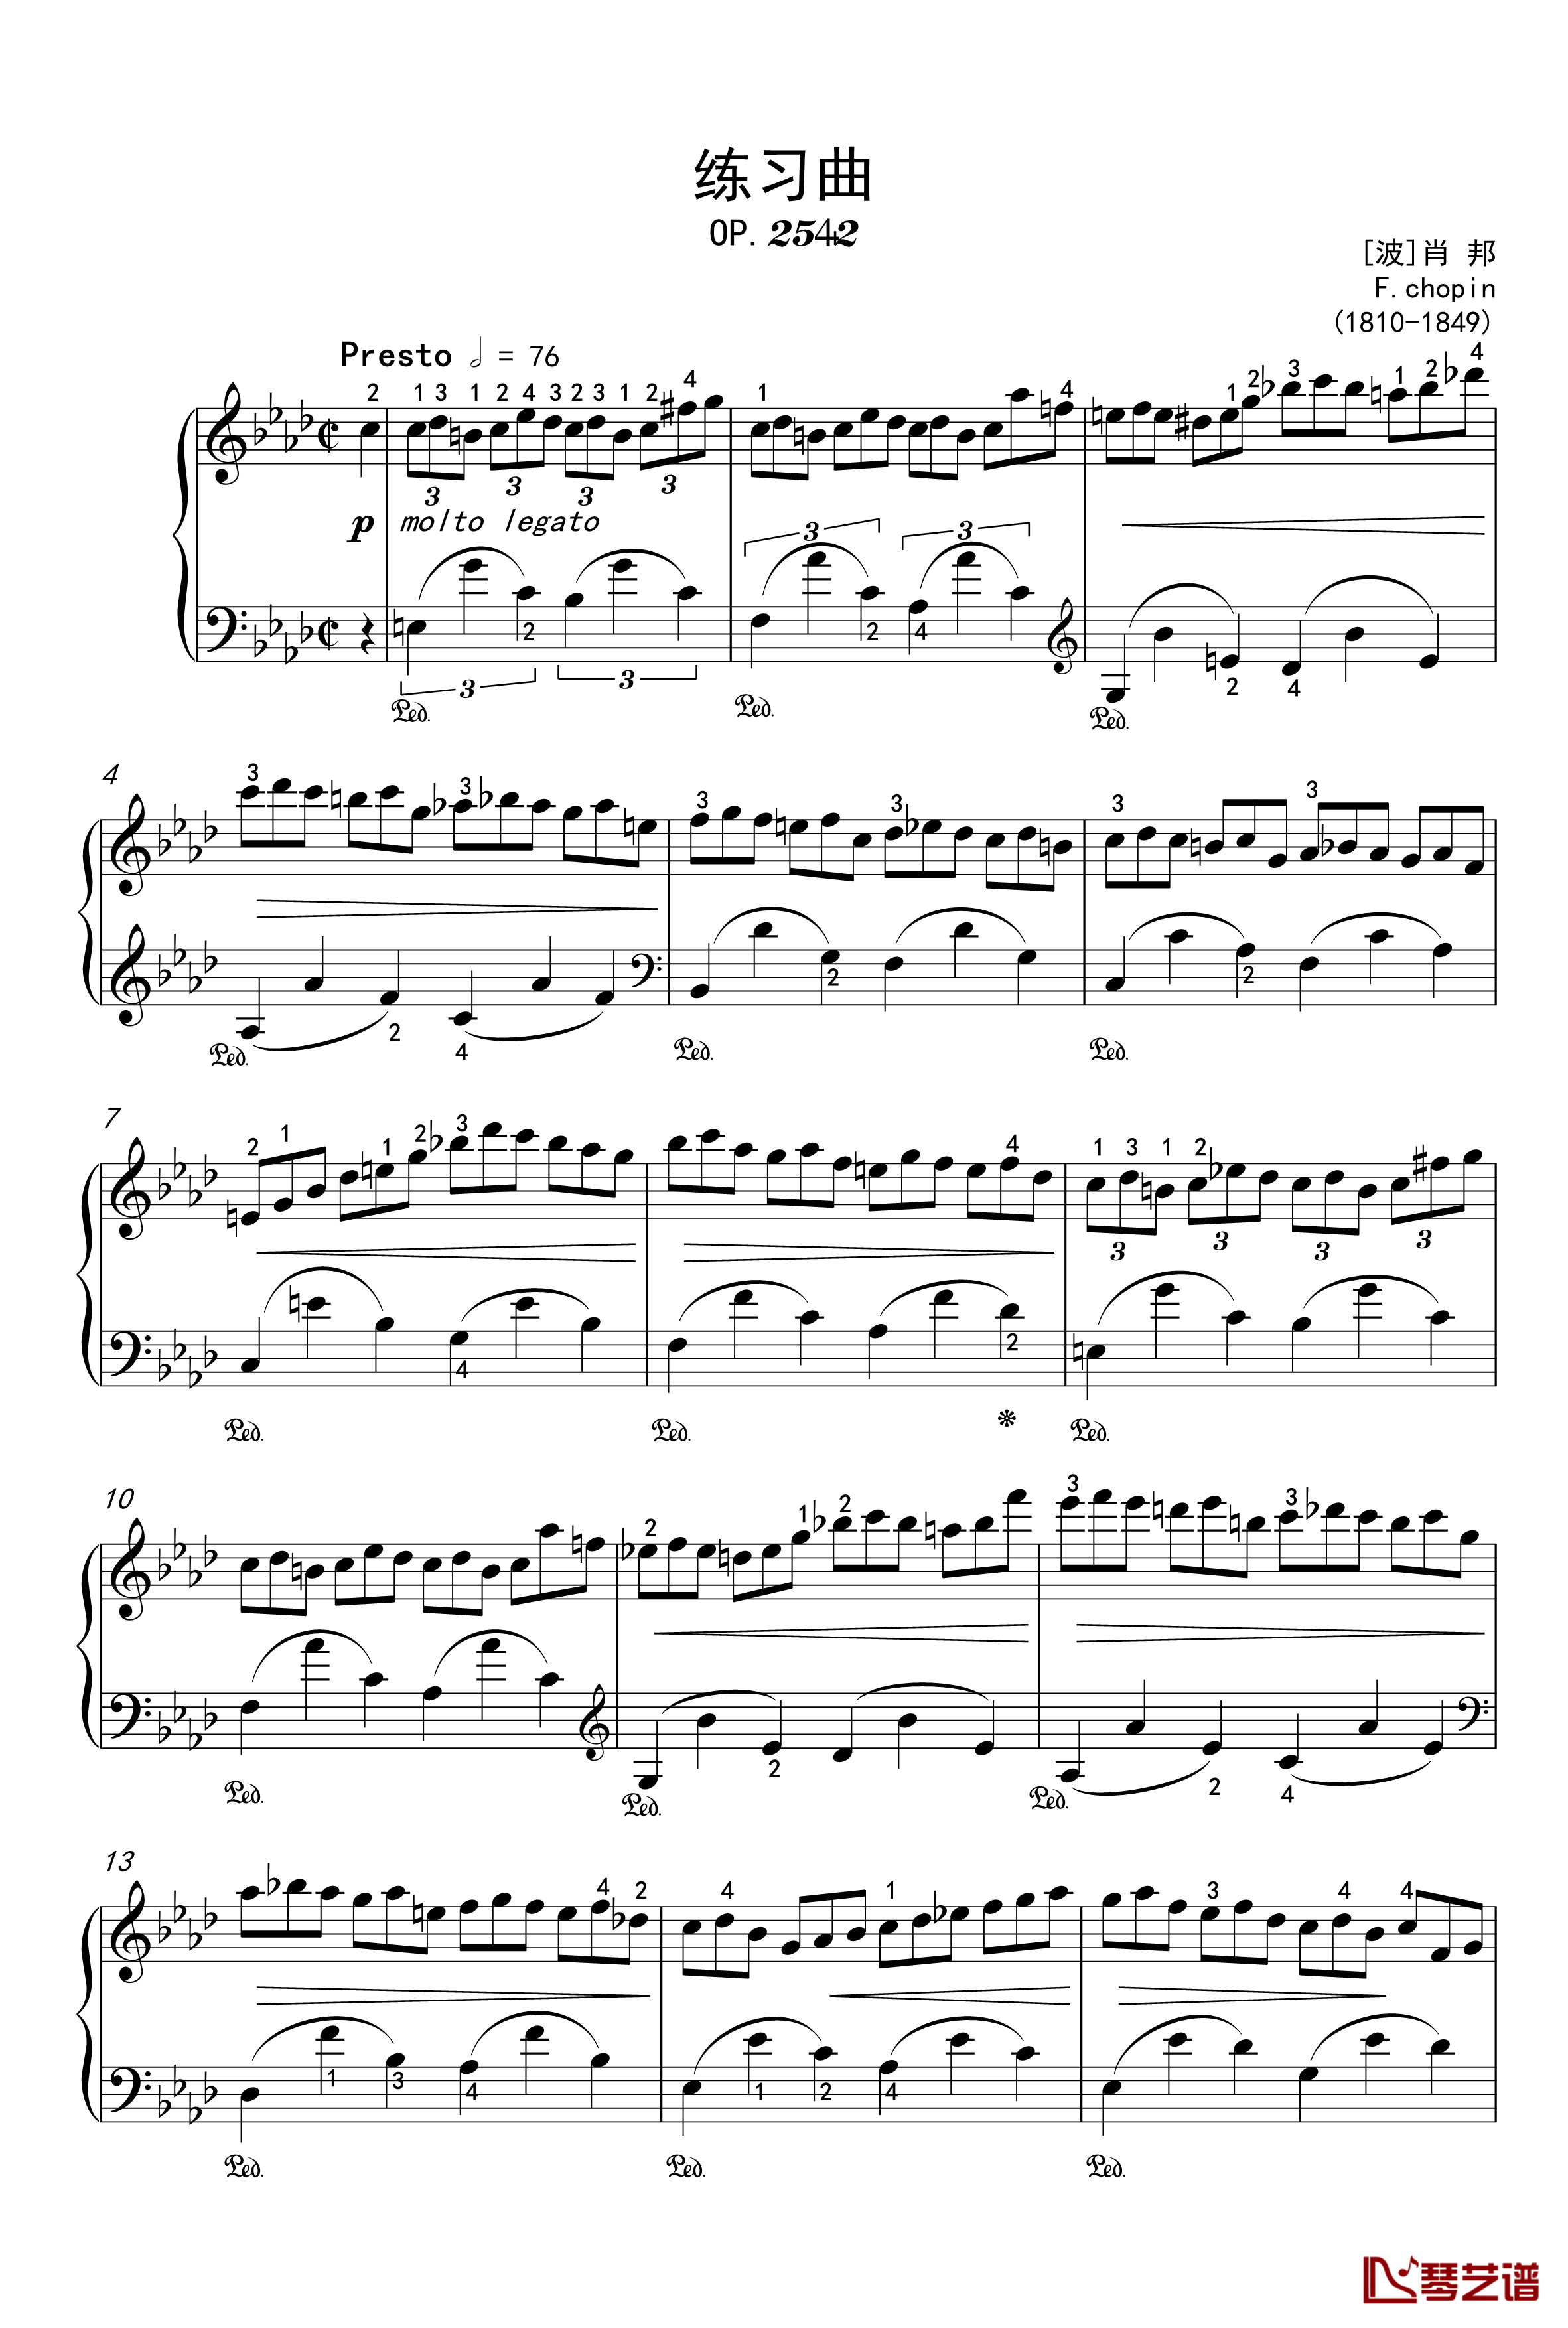 练习曲钢琴谱-OP-25-2-肖邦-chopin1